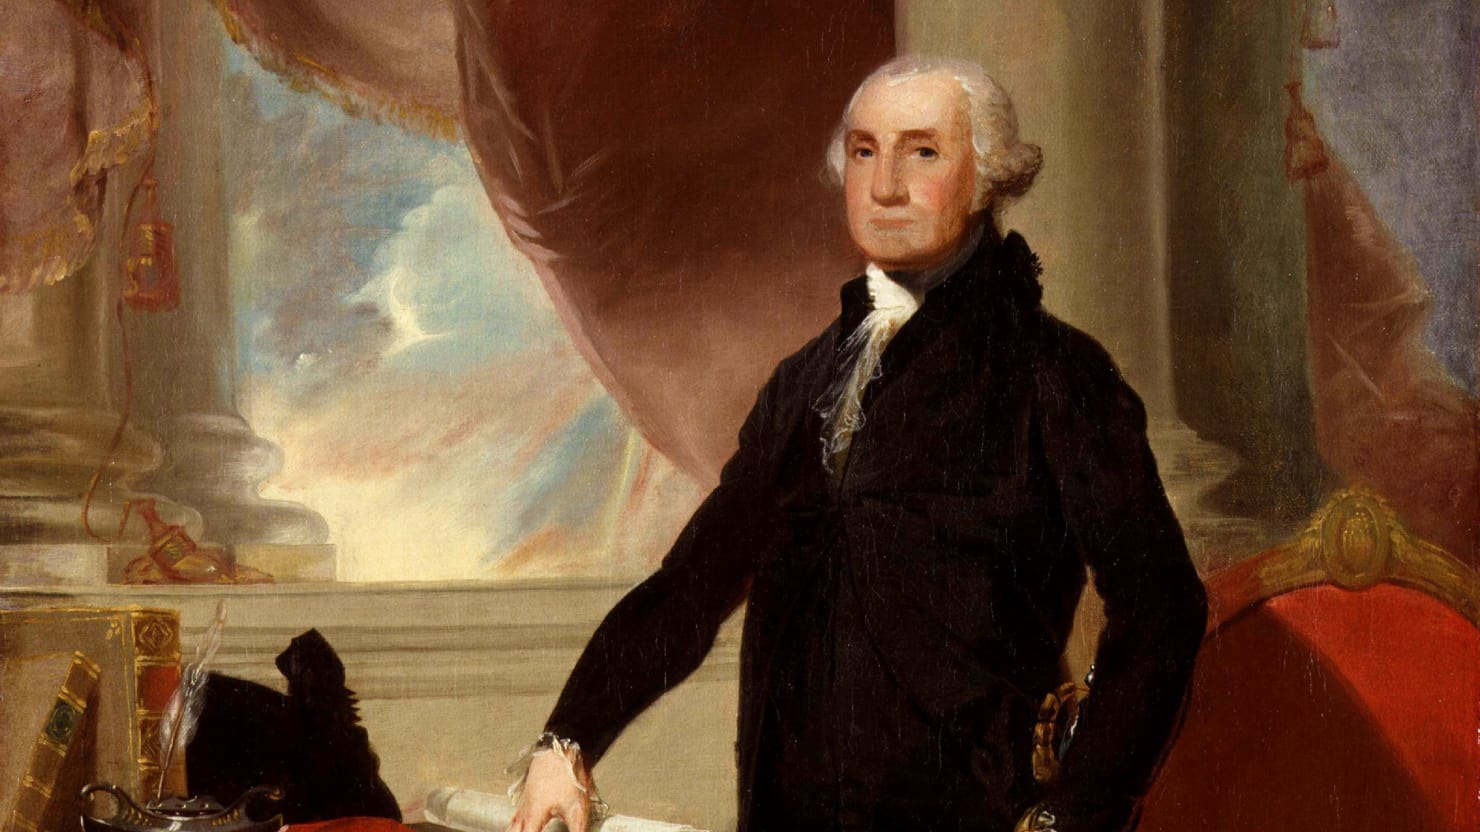 وظائف رؤساء الولايات المتحدة قبل تولي منصب الرئاسة 181916-170120-avlon-george-washington-inauguration-tease_f4lg38